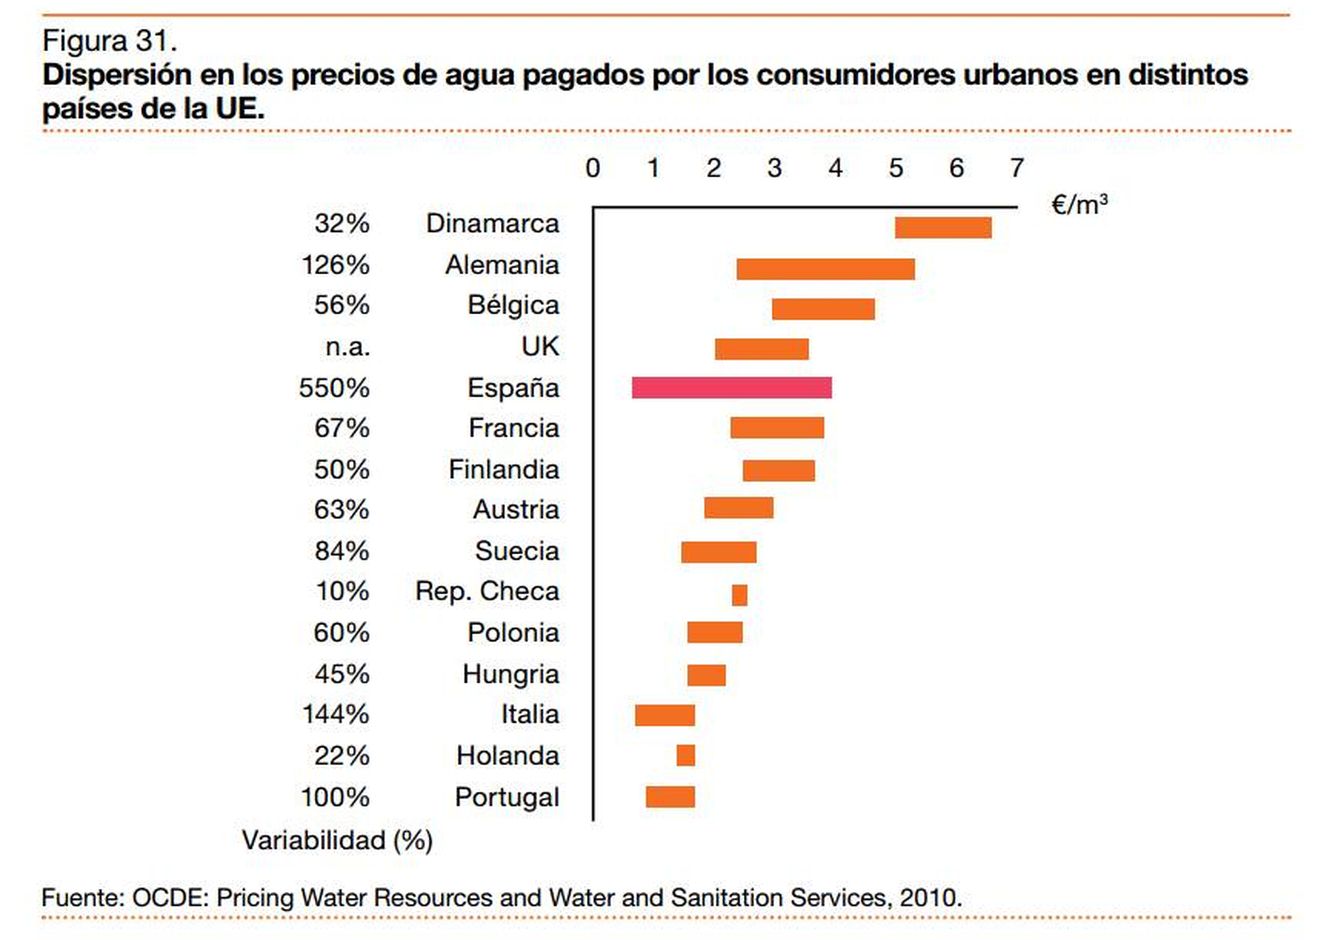 Fuente: La gestión del agua en España, análisis de la situación actual del sector y retos futuros. (PwC)